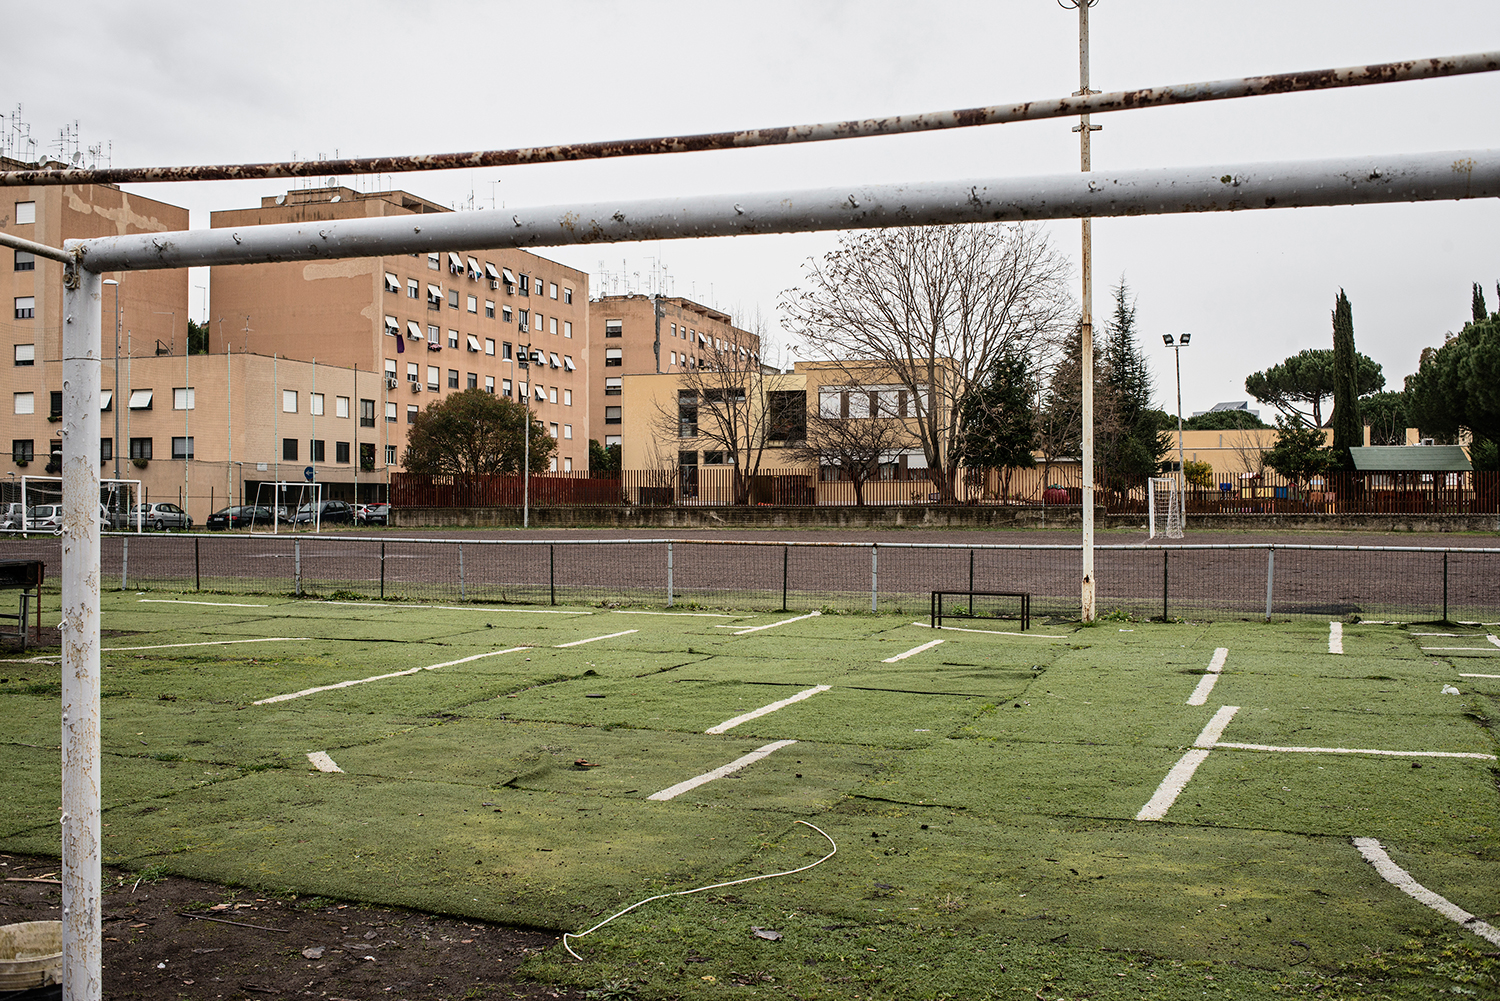 Soccer field, Valle Melania, Rome, January 2015.